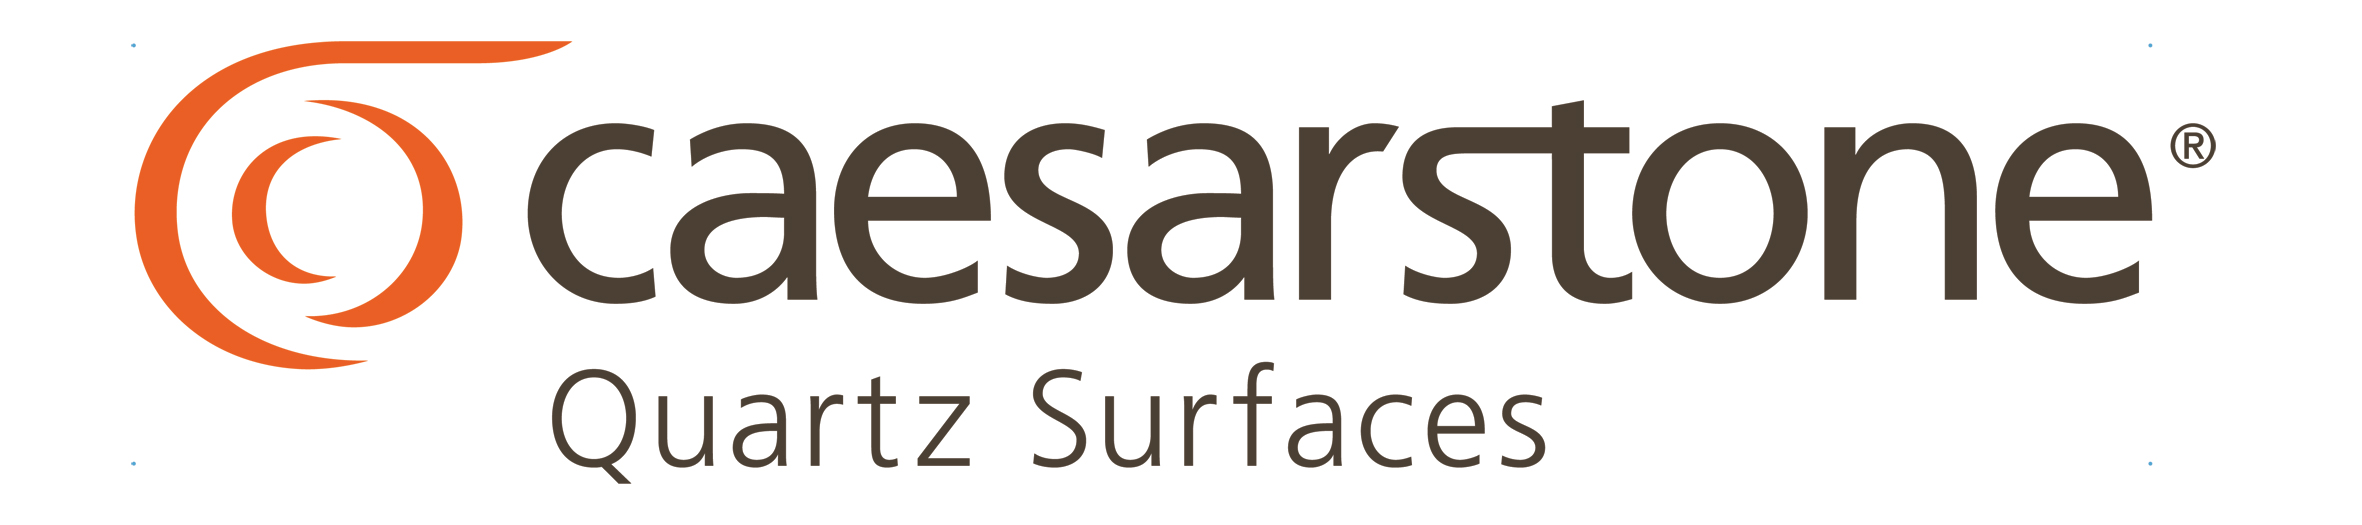 caesarstone-logo.jpg